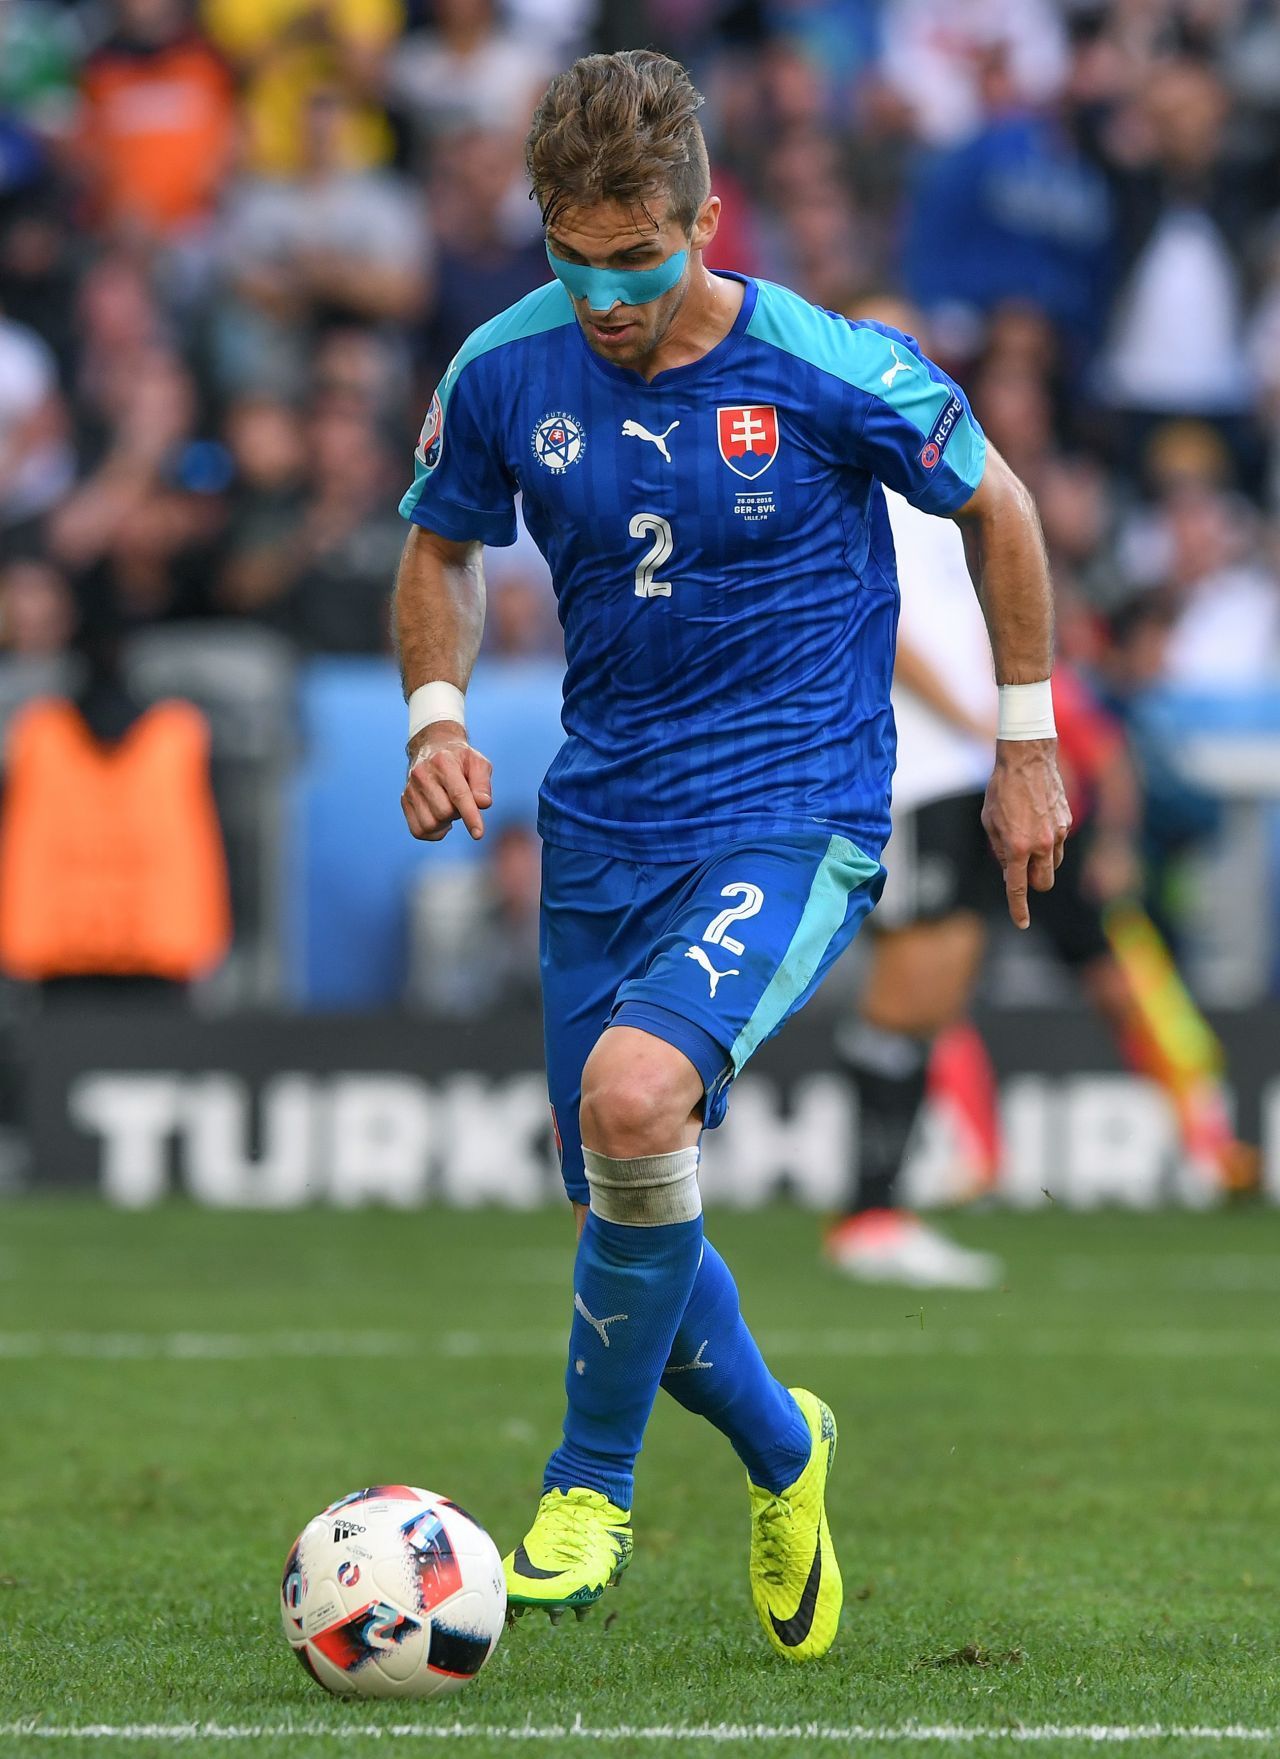 Bei der EM 2016 spielte  Peter Pekarik (Slowakei) mit einem Kinesio-Tape im Gesicht. Die Fans diskutierten wild über die vermeintliche "Kriegsbemalung". Grund war aber ein Nasenbeinbruch, den er sich bei einem Spiel zugezogen hatte. 